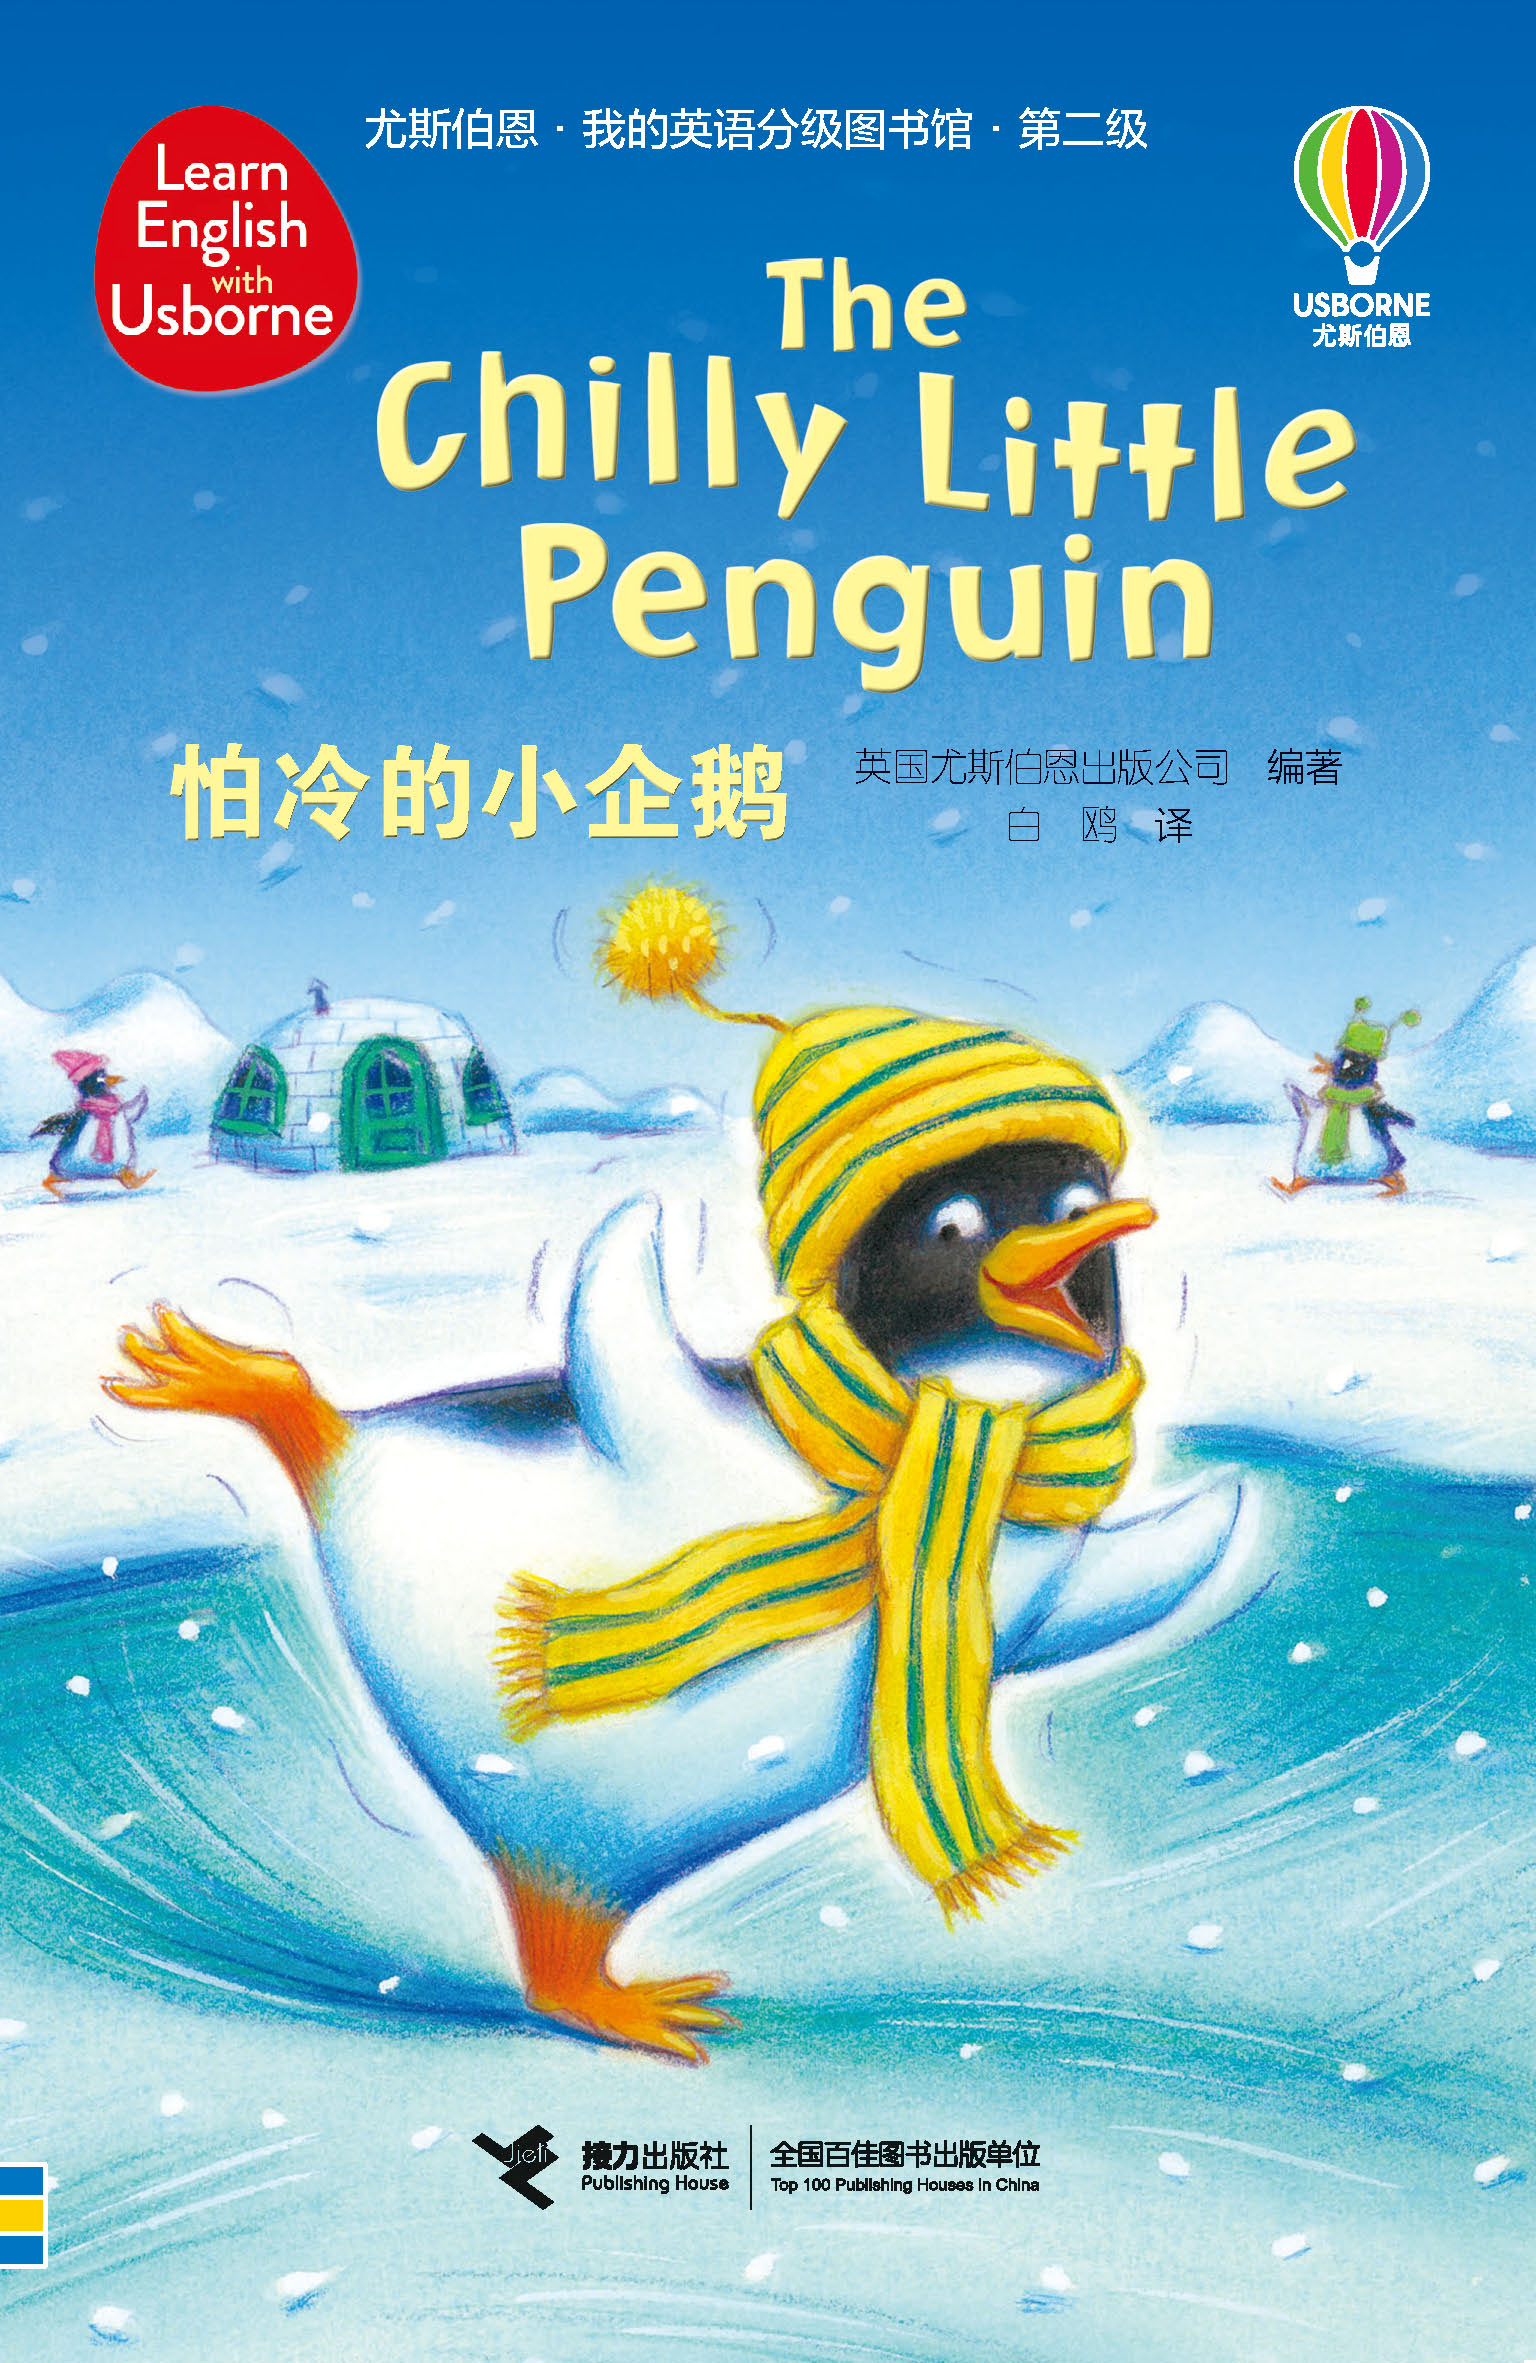 尤斯伯恩·我的英语分级图书馆·第二级·怕冷的小企鹅